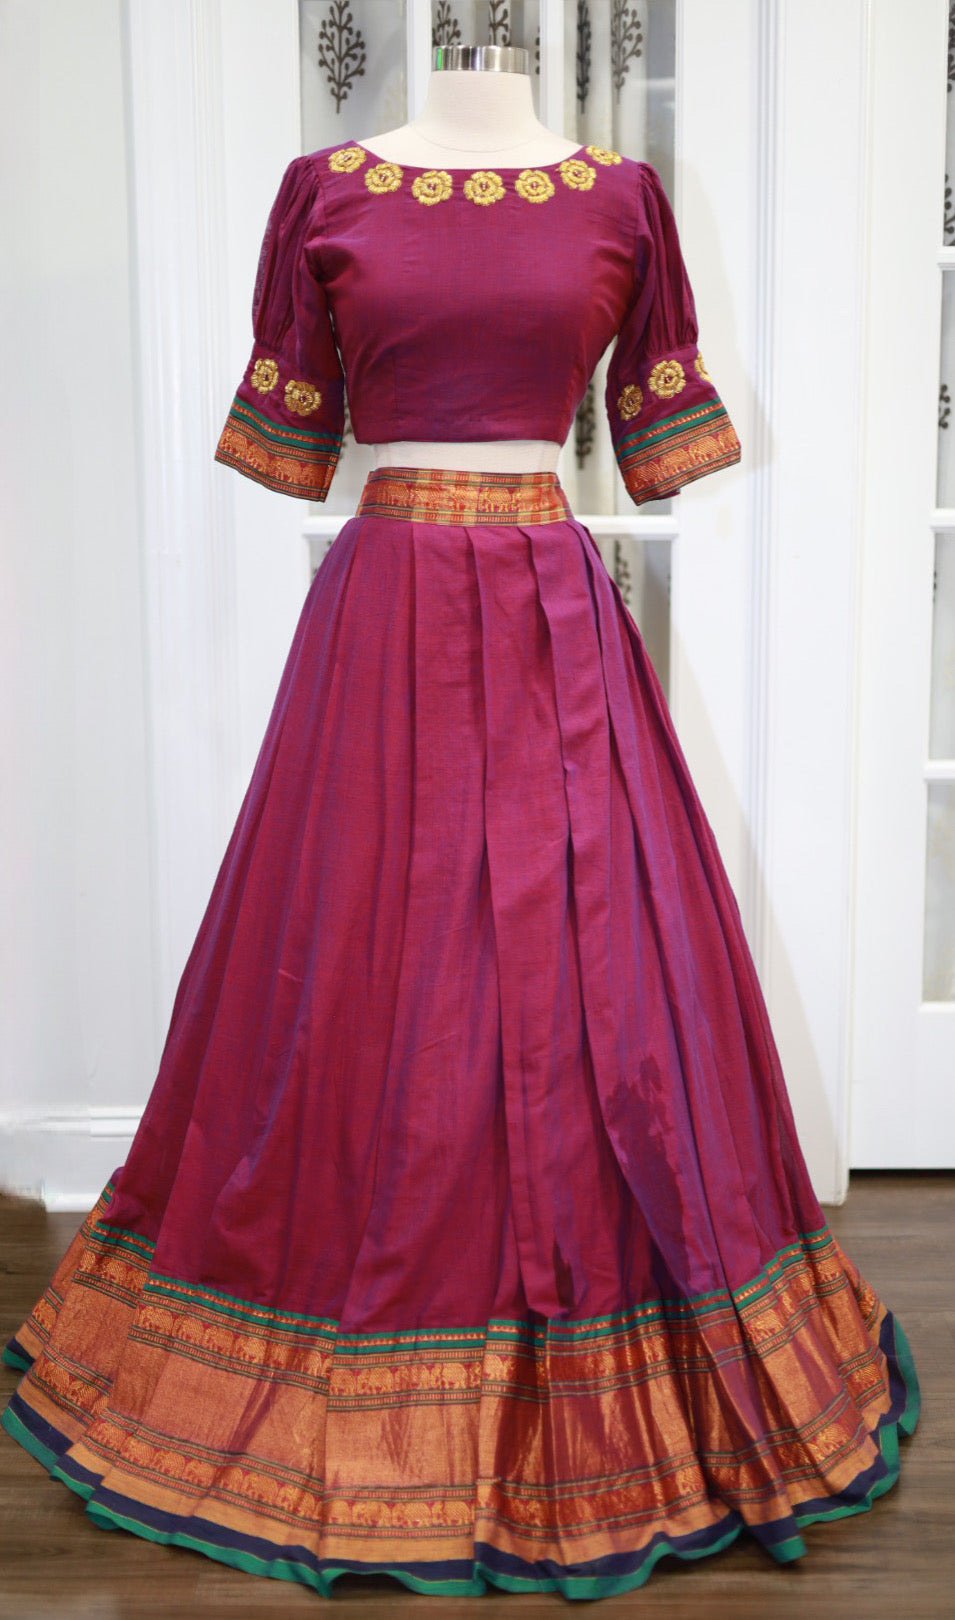 crop top lehenga | half saree lehanga | Half saree lehenga, Half saree  designs, Pink half sarees